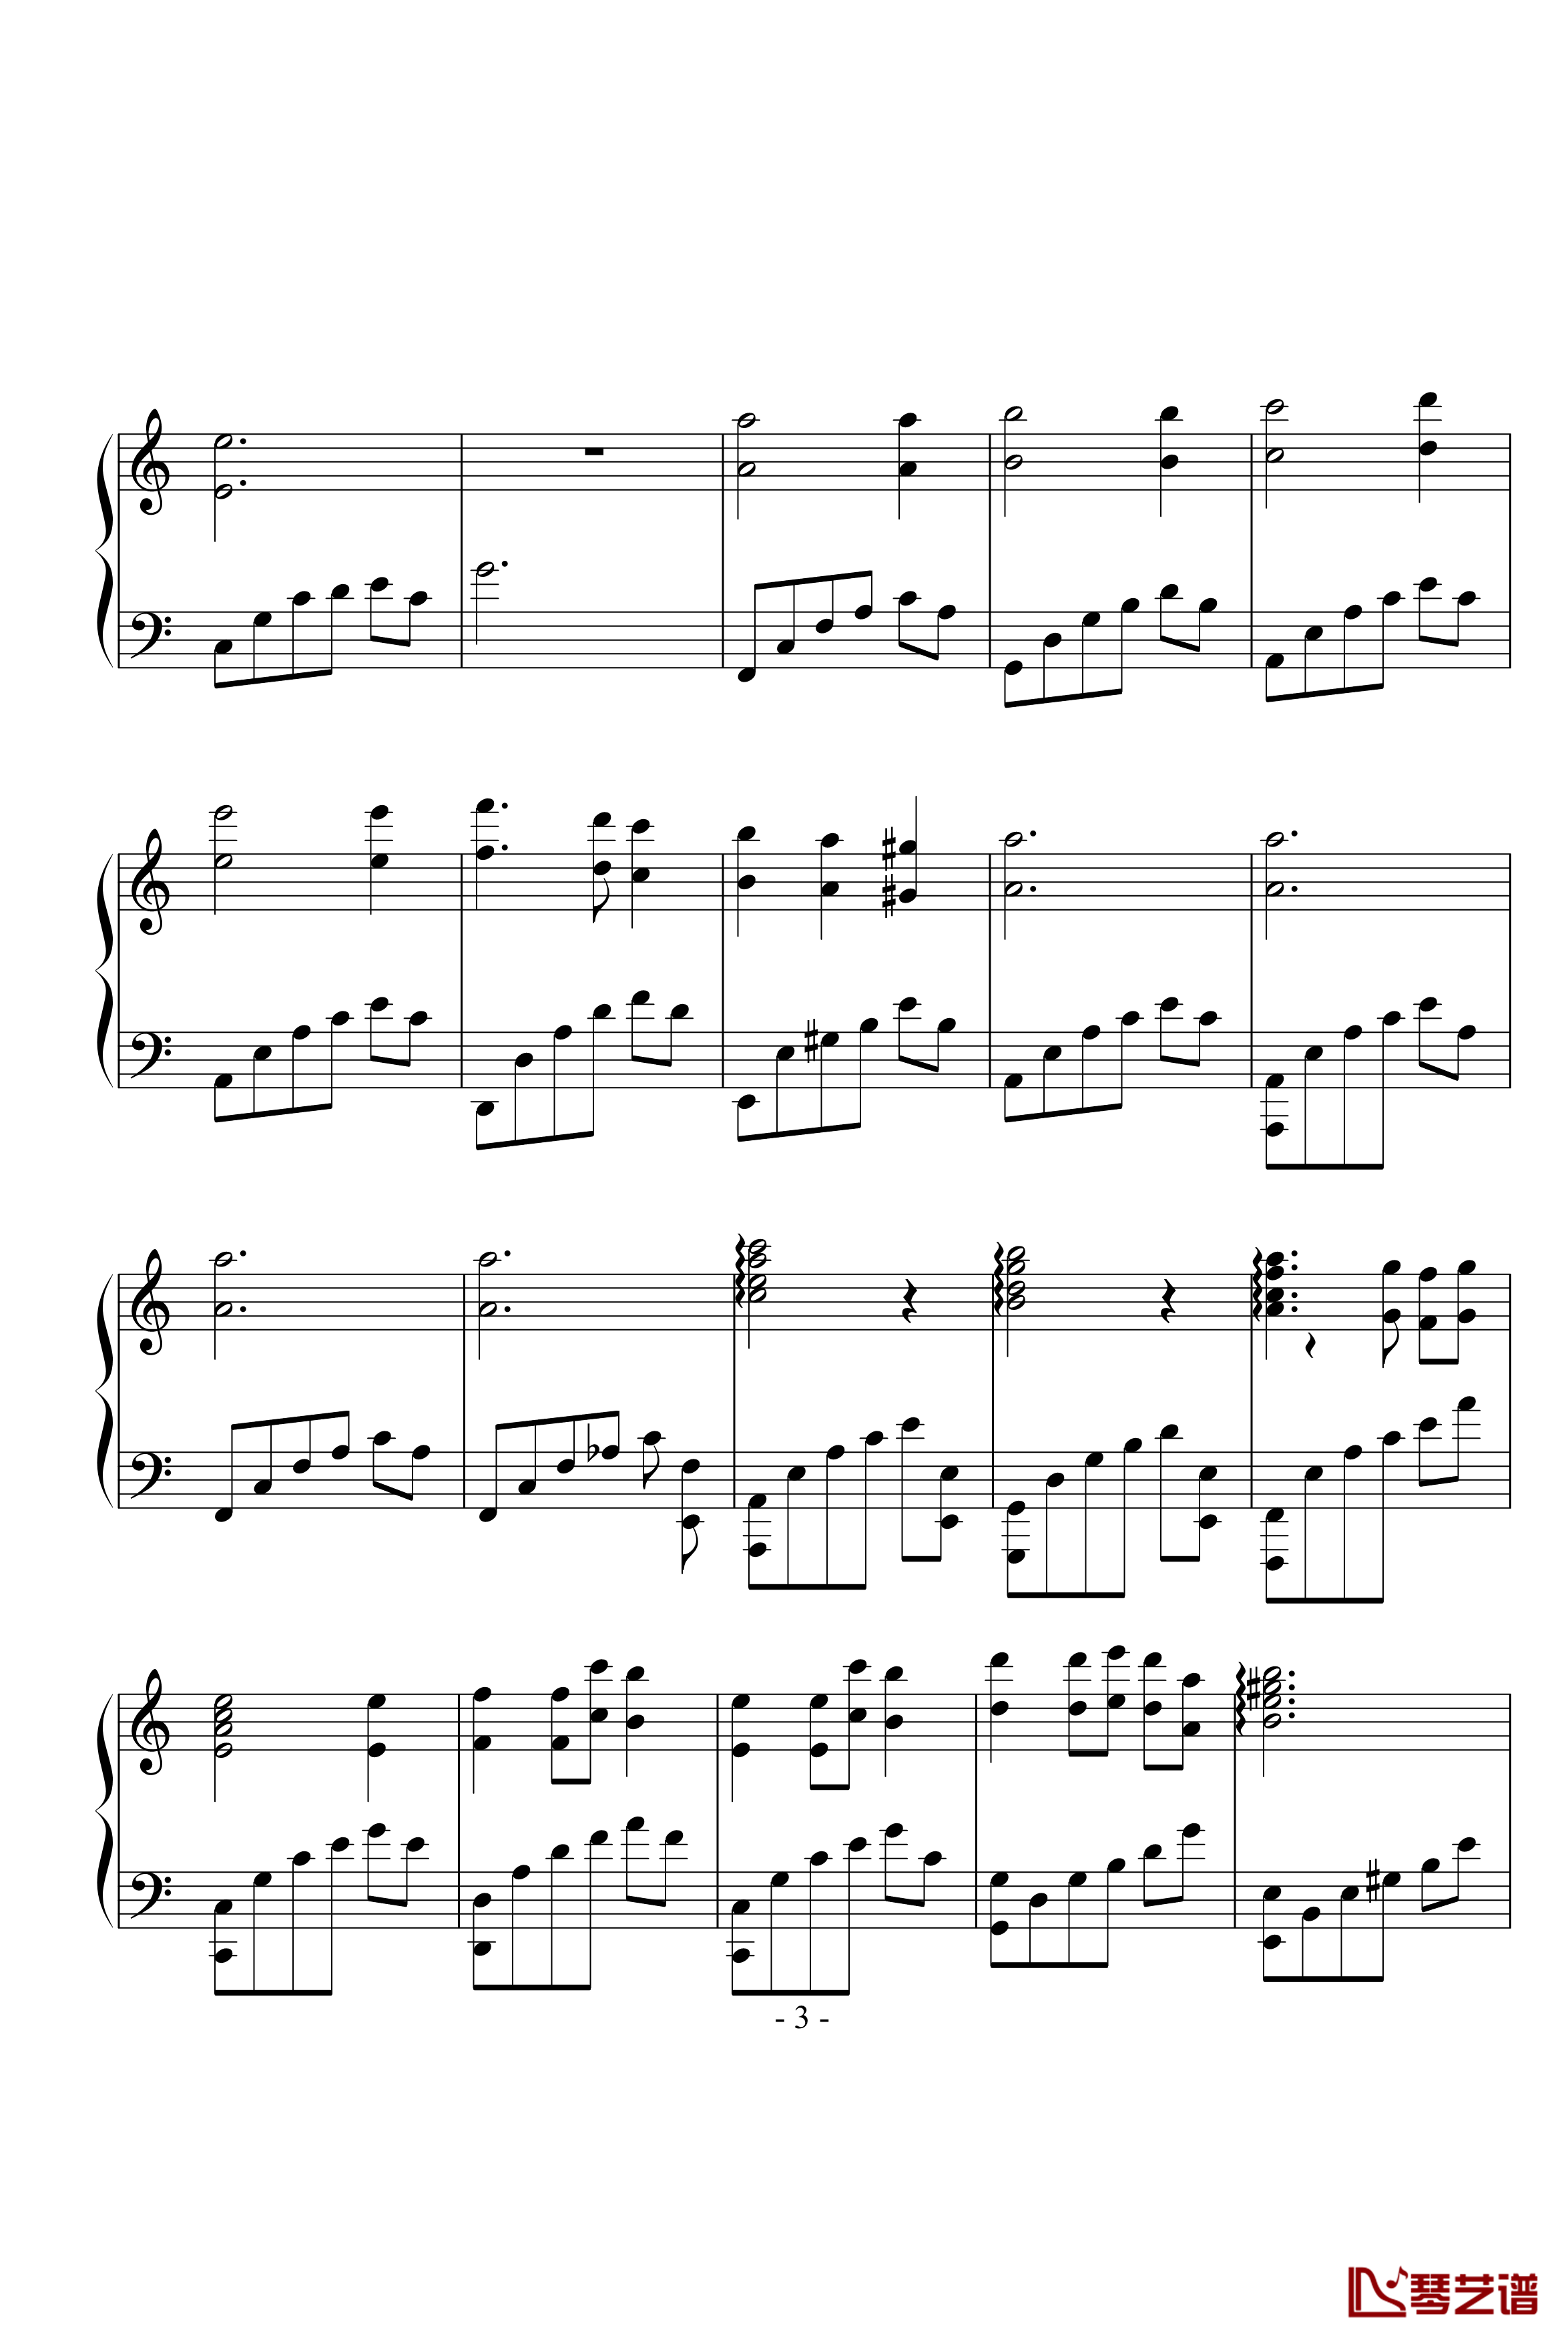 痛苦的呐喊钢琴谱-黄紫橙3